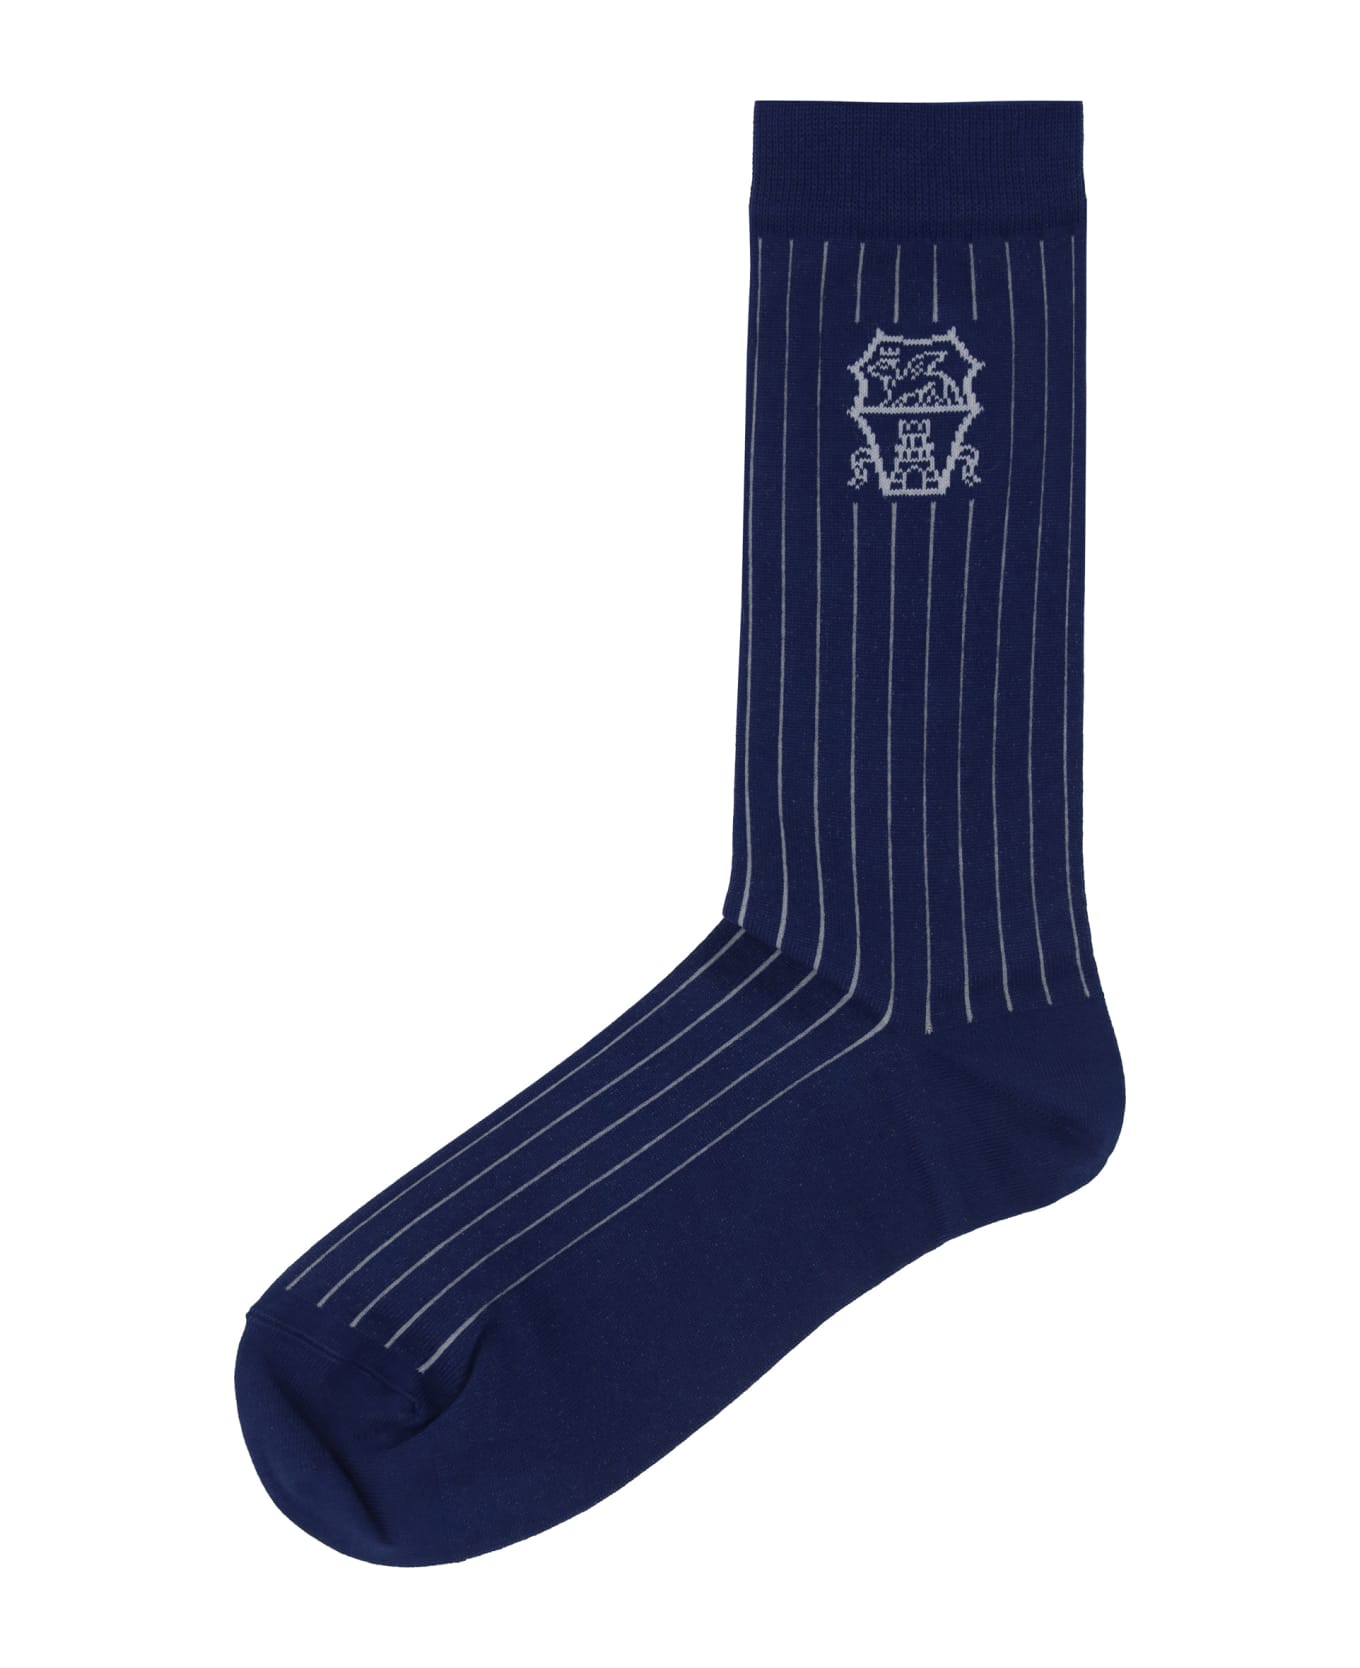 Brunello Cucinelli Socks - Blu Prussia+grigio Chiaro 靴下